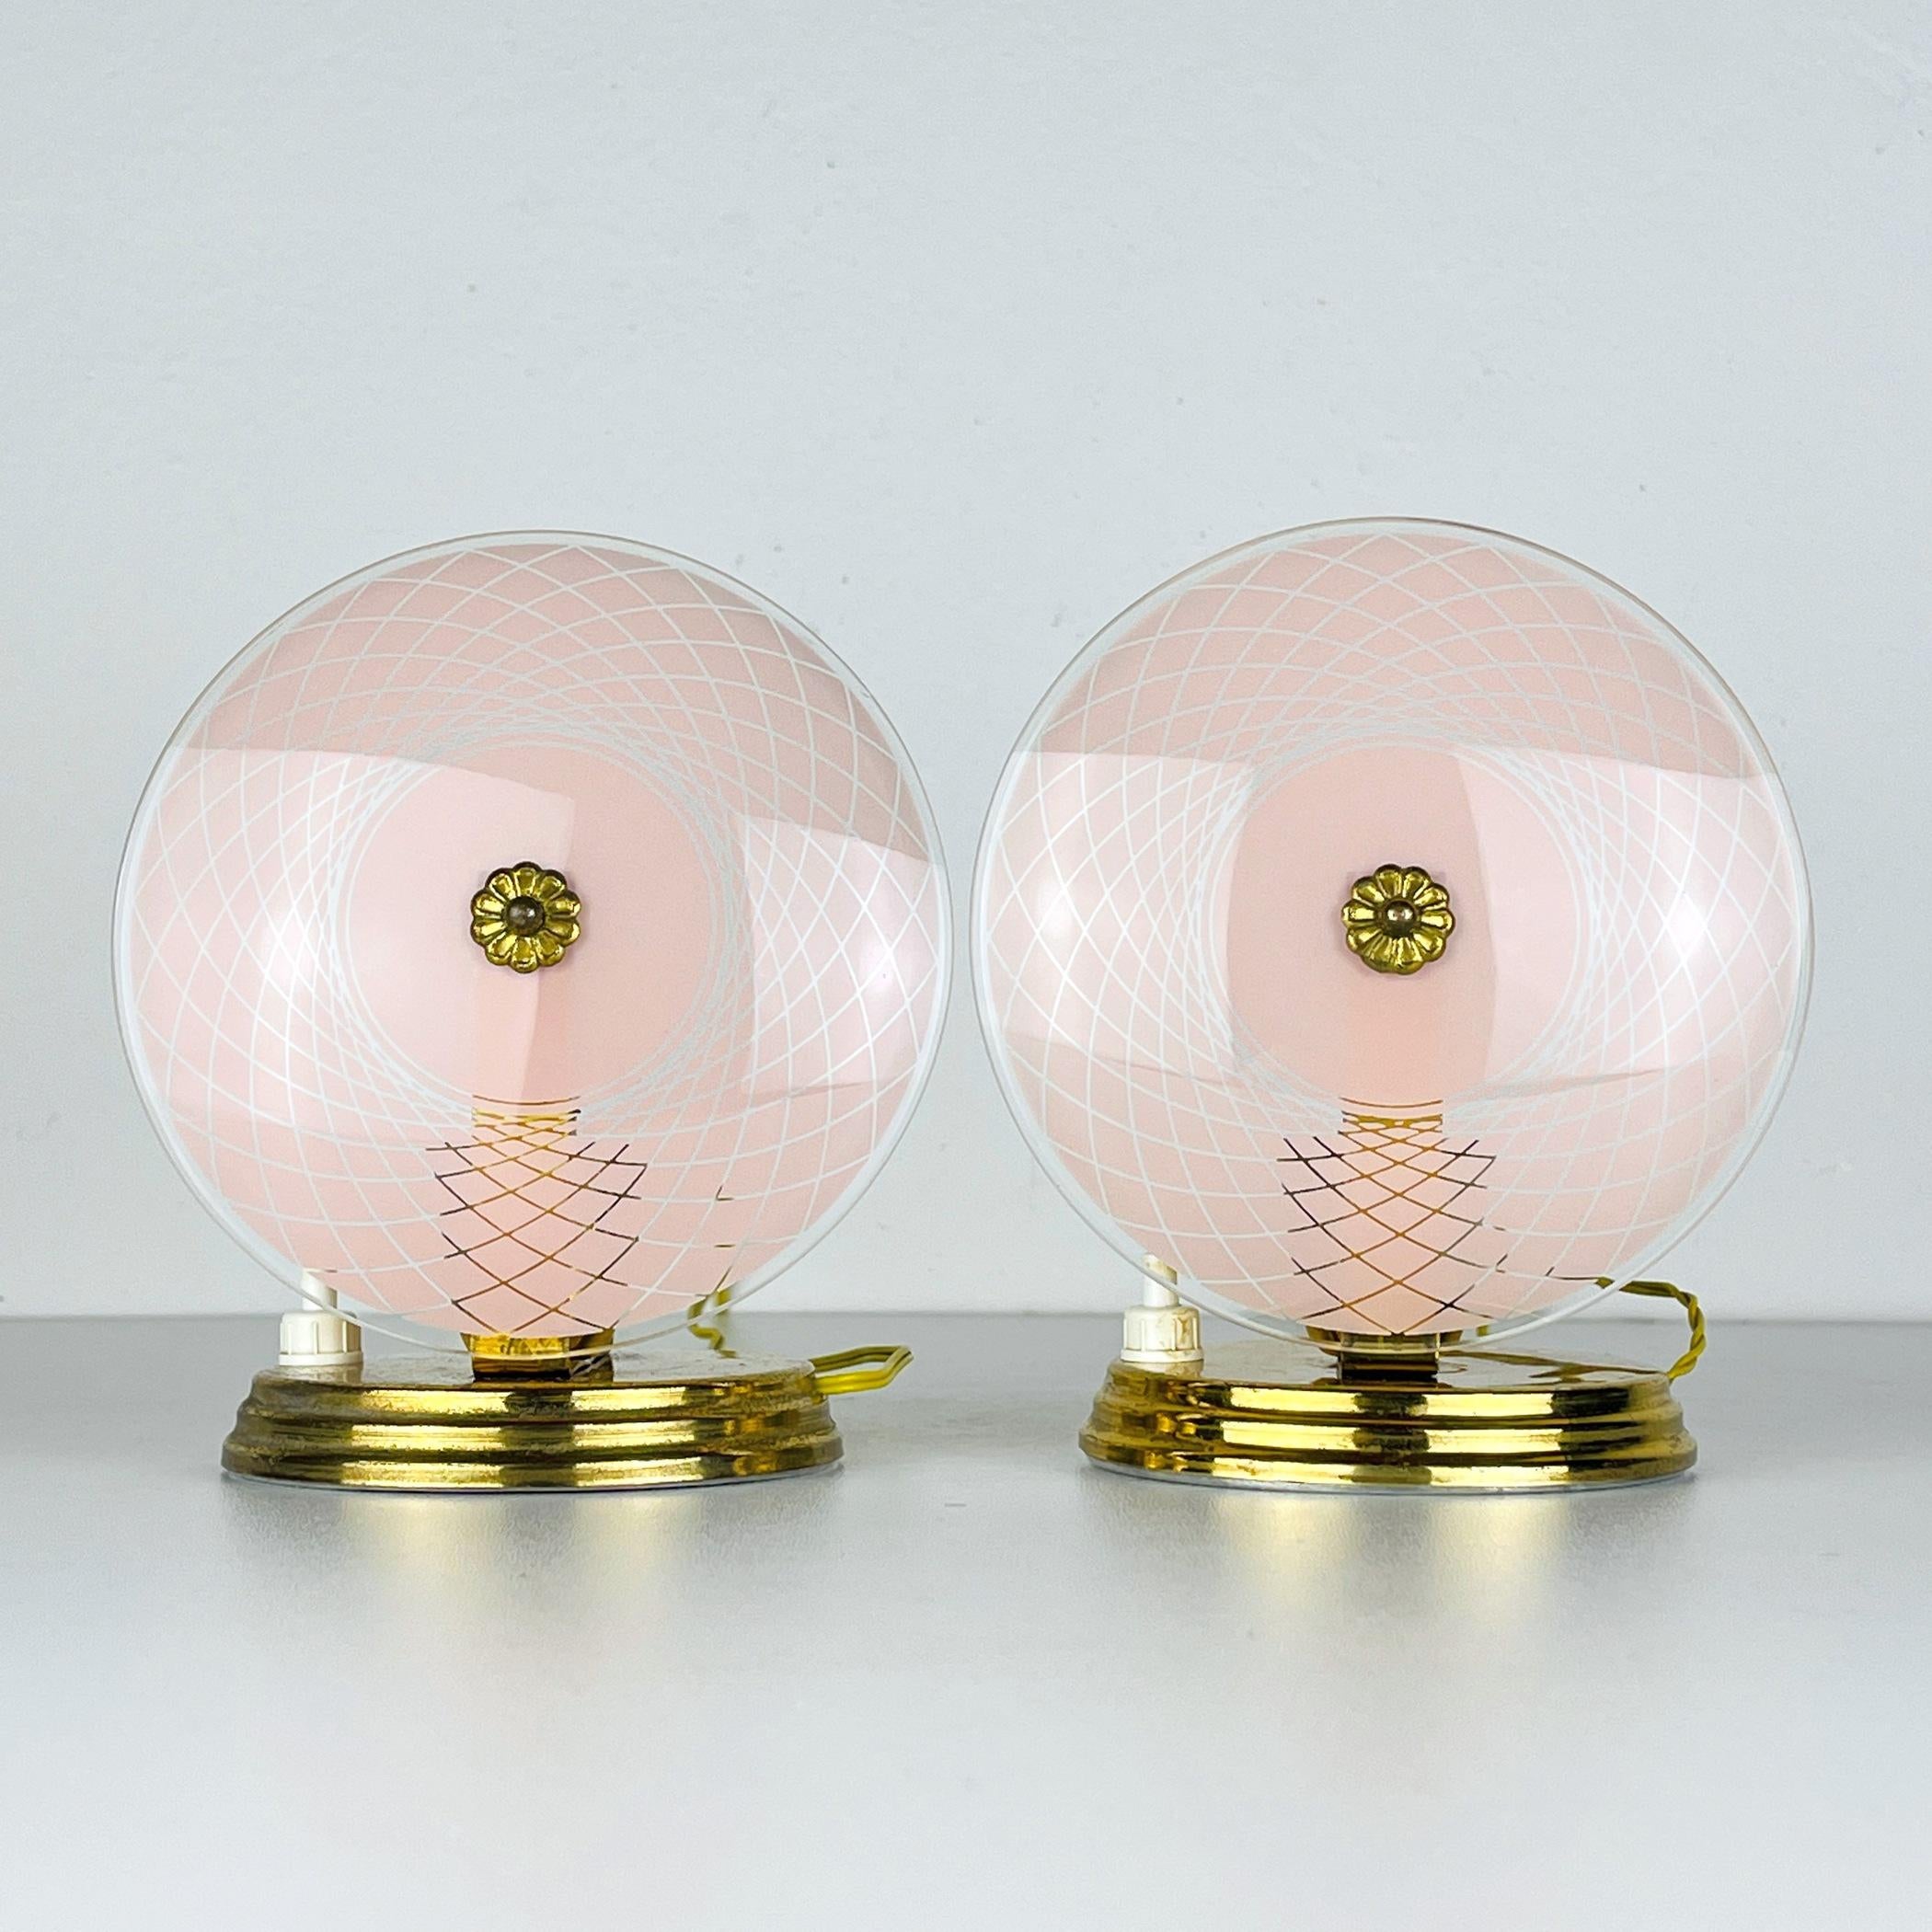 Cette ravissante paire de lampes de table, fabriquée en Italie dans les années 1950, rehausse votre espace. Leur couleur enchanteresse et leur patine légère et gracieuse leur confèrent un charme intemporel, ce qui en fait un complément polyvalent